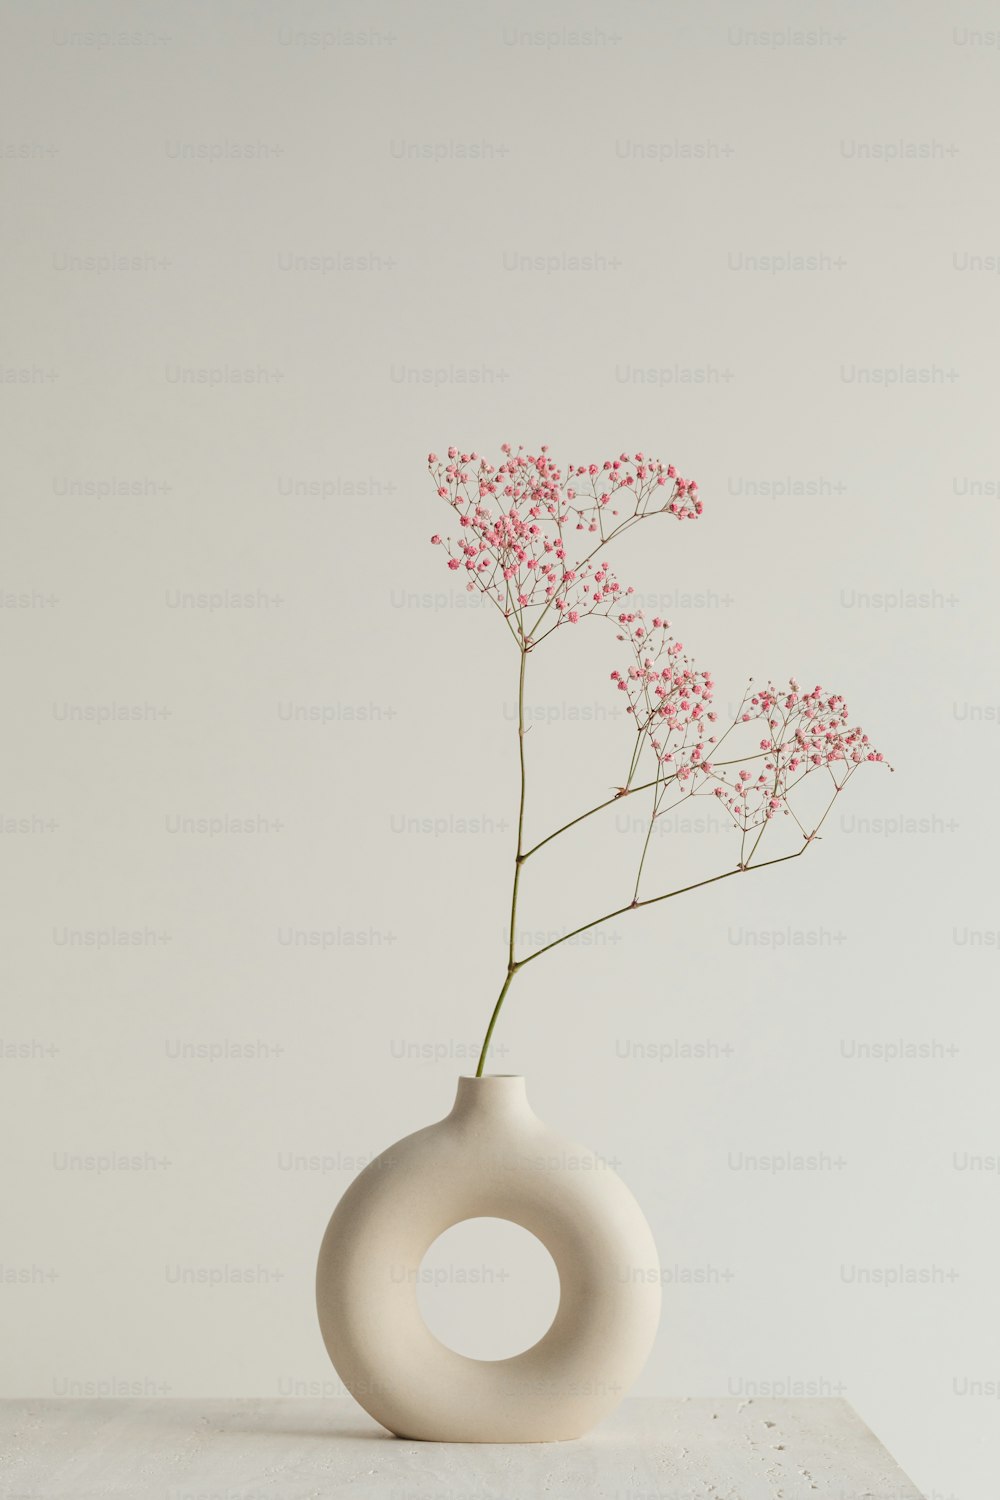 um vaso branco com algumas flores cor-de-rosa nele